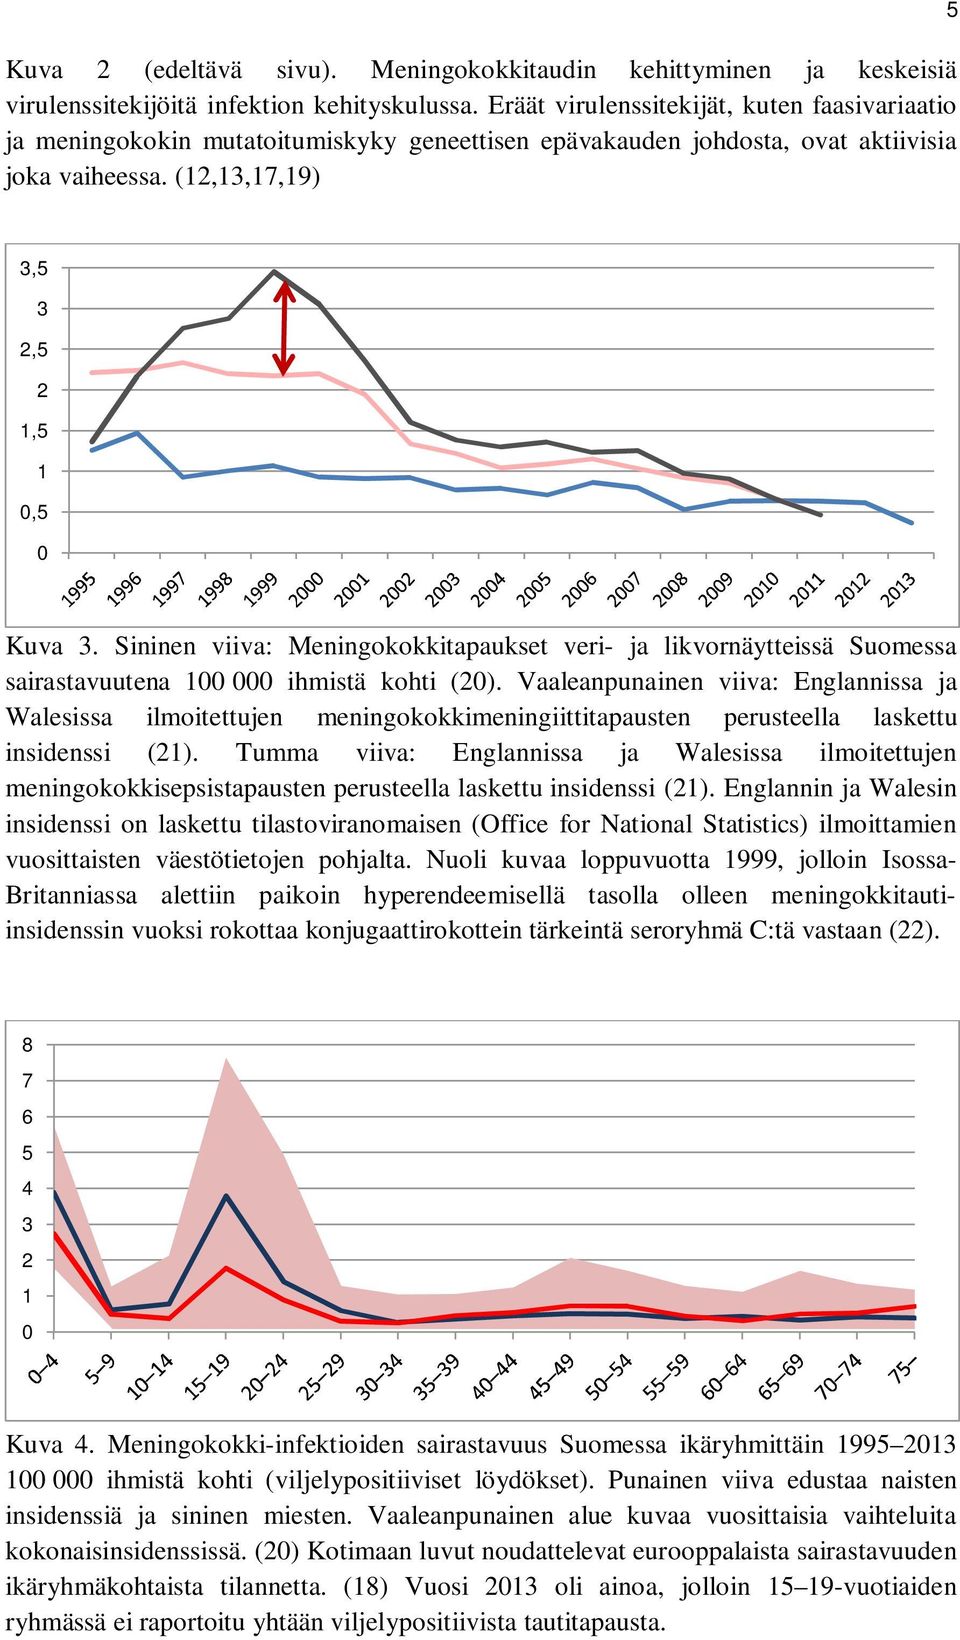 Sininen viiva: Meningokokkitapaukset veri- ja likvornäytteissä Suomessa sairastavuutena 100.000 ihmistä kohti (20).